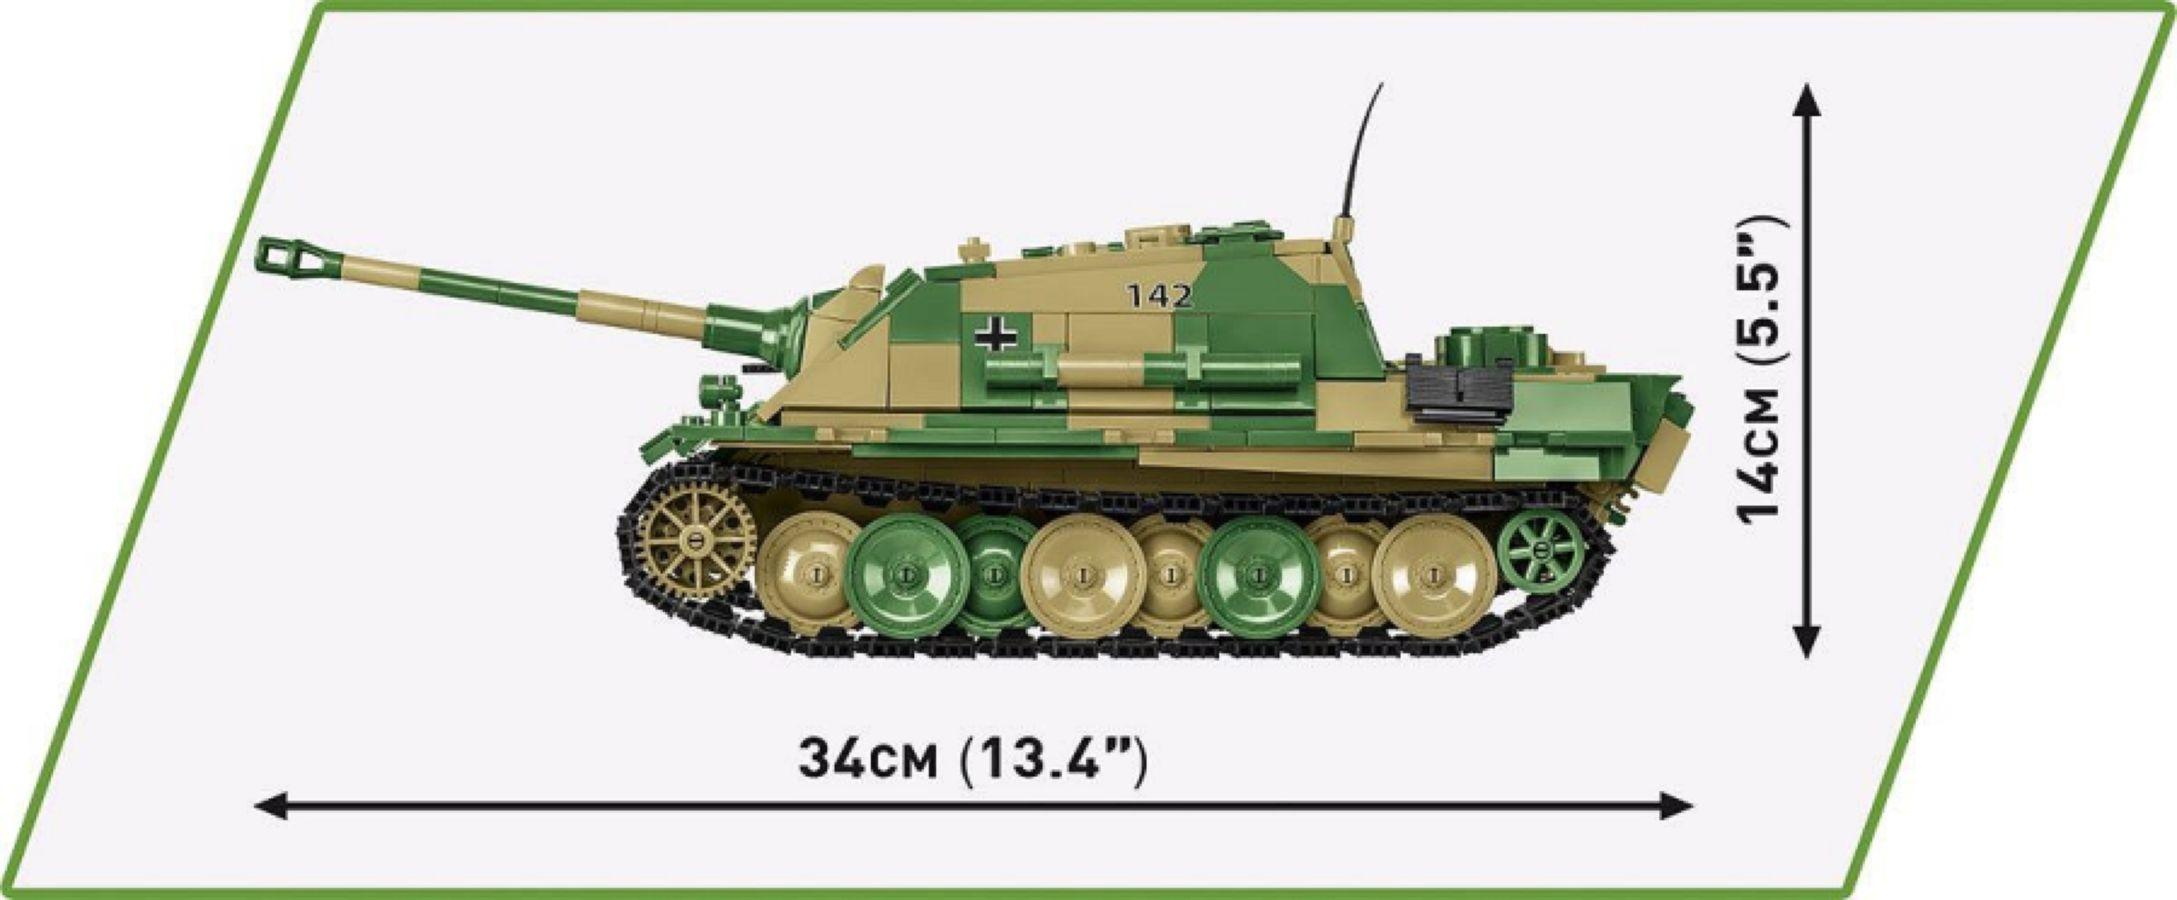 COB2574 World War 2 - Sd.Kfz.173 Jagdpanther (970 Piece Kit) - Cobi - Titan Pop Culture